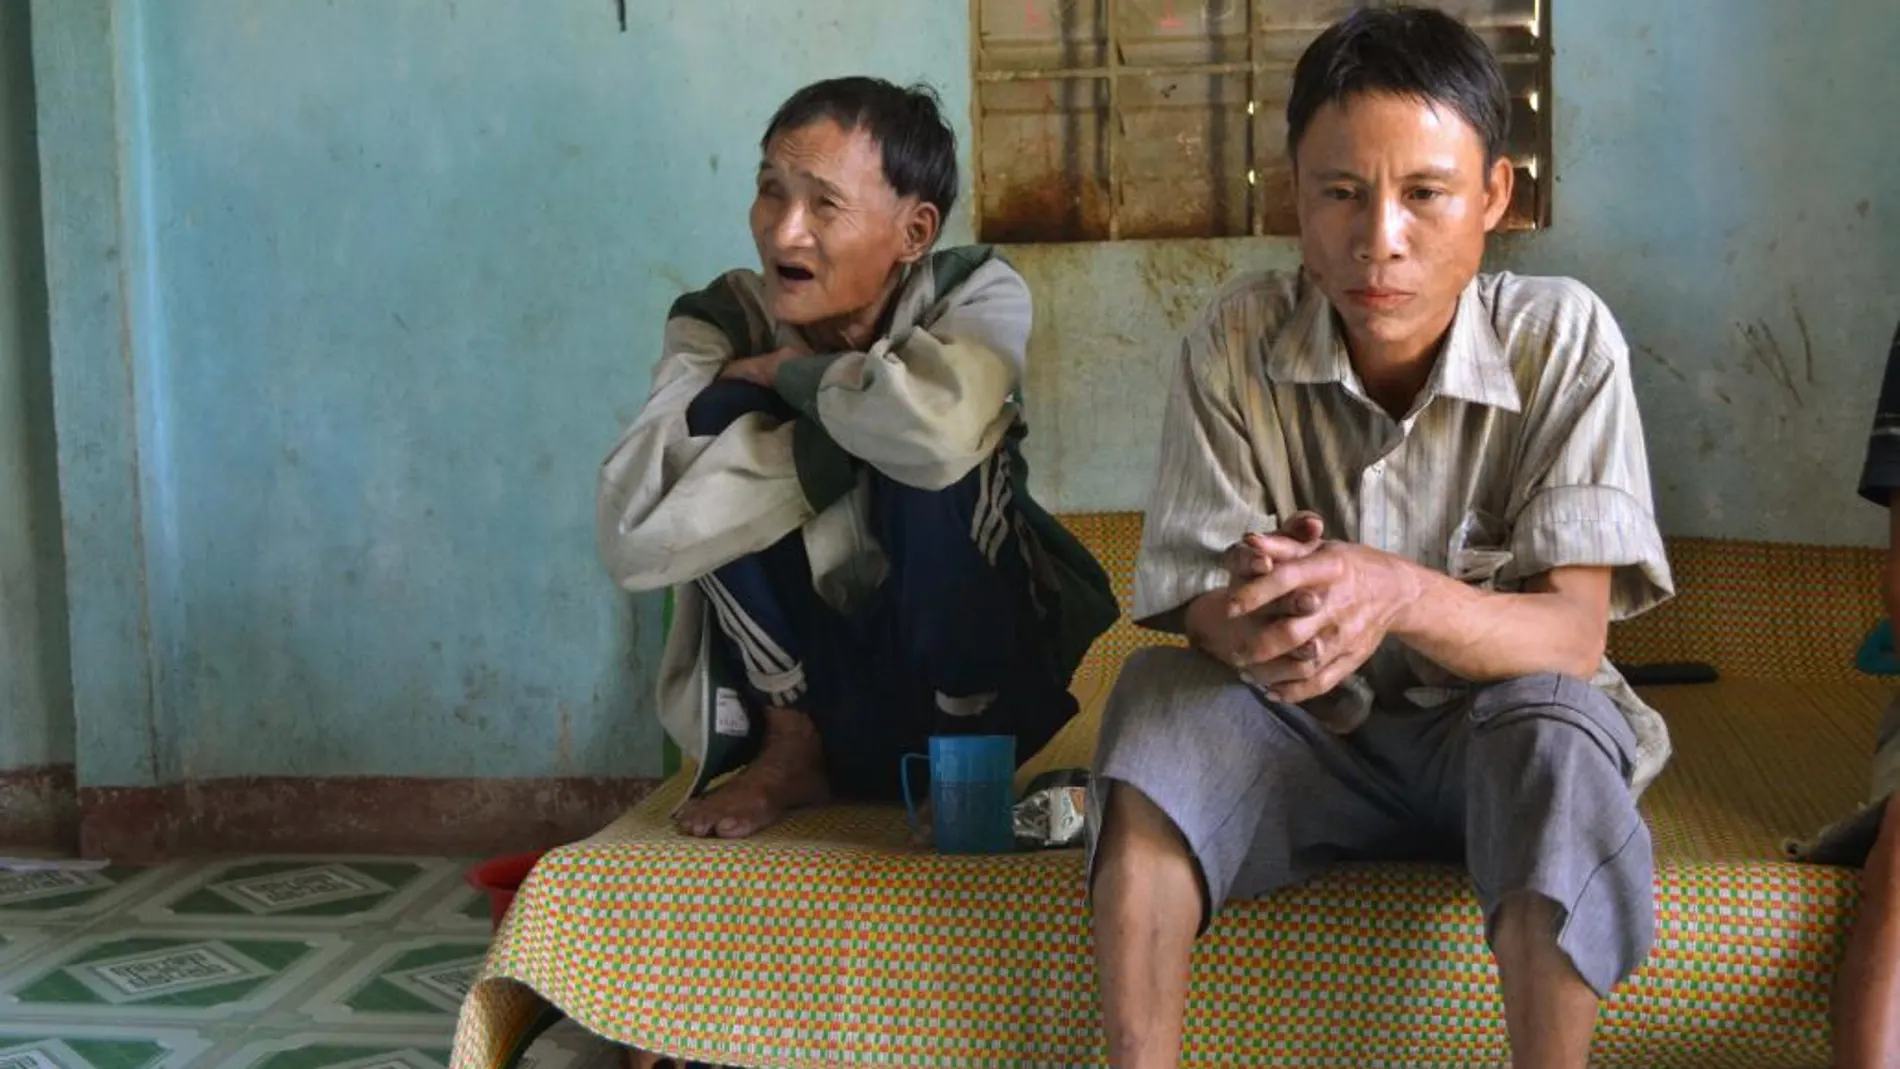 Ho Van Thanh (i), de 83 años, y su hijo Ho Van Lang (d), de 46, se adaptan con dificultades a su nueva vida en la aldea de Tay Tra